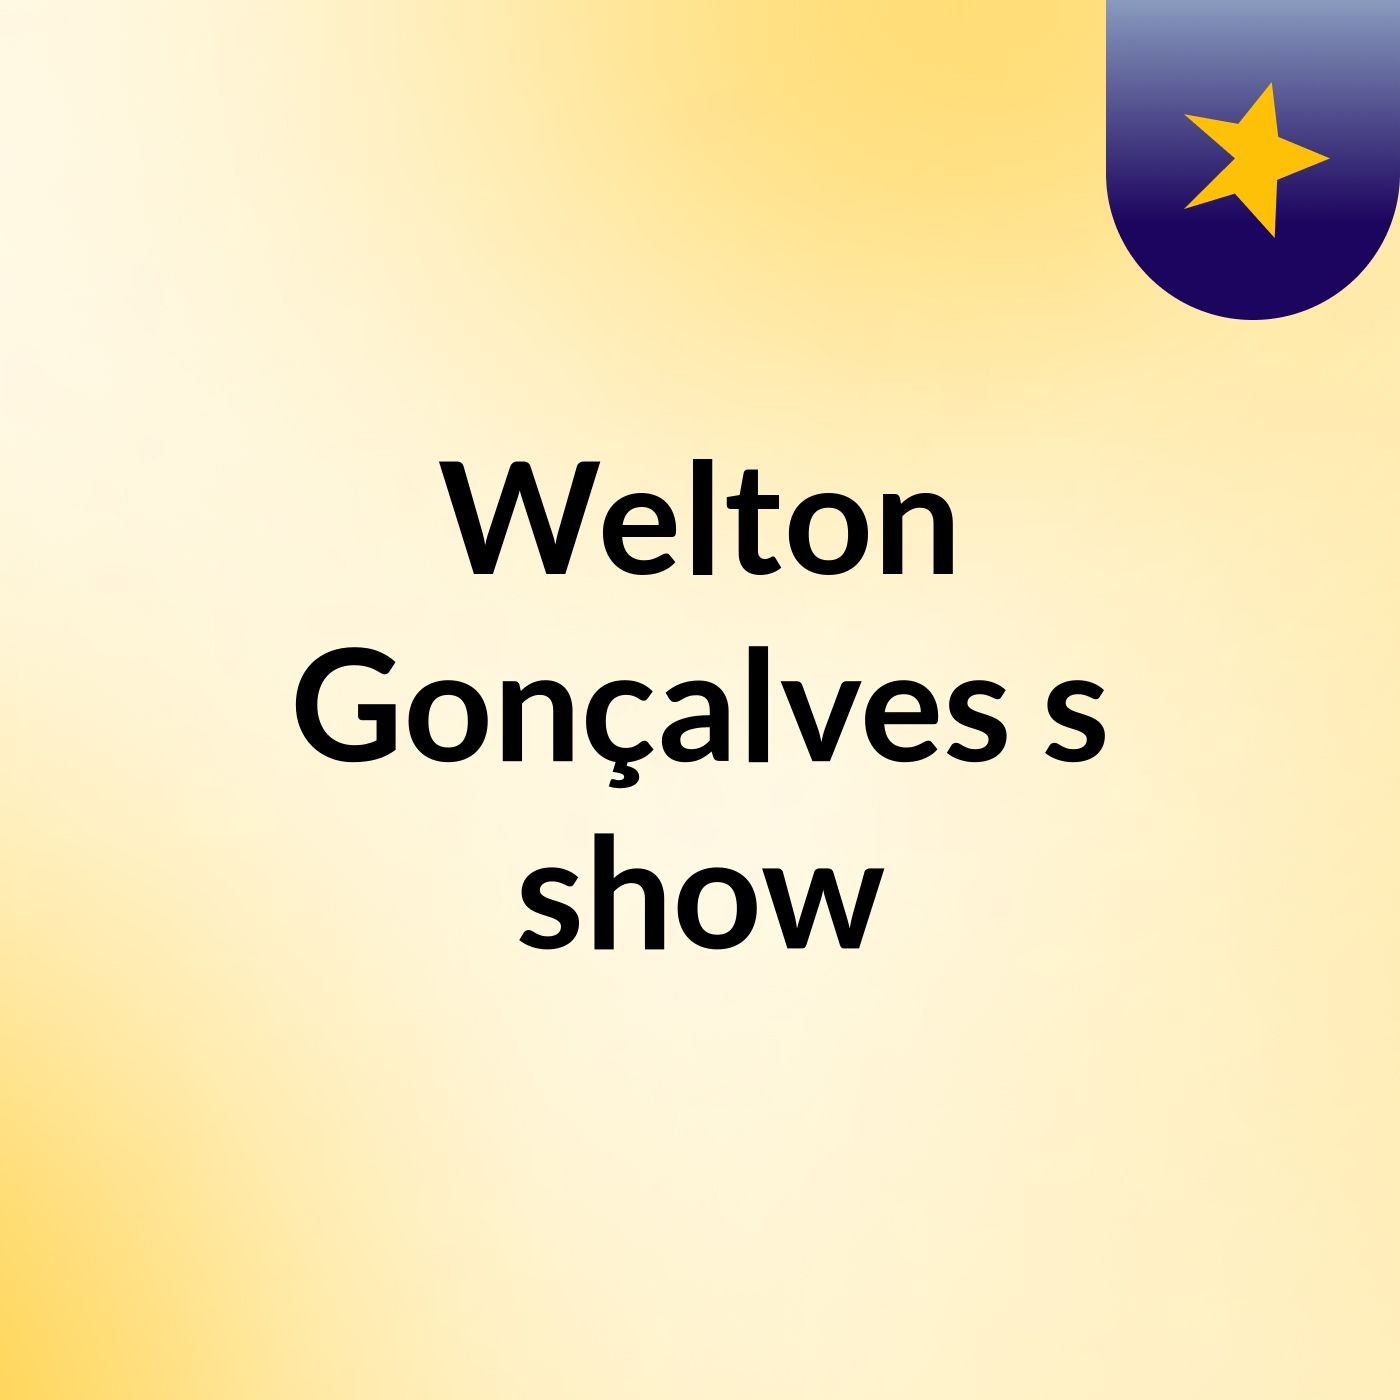 Welton Gonçalves's show